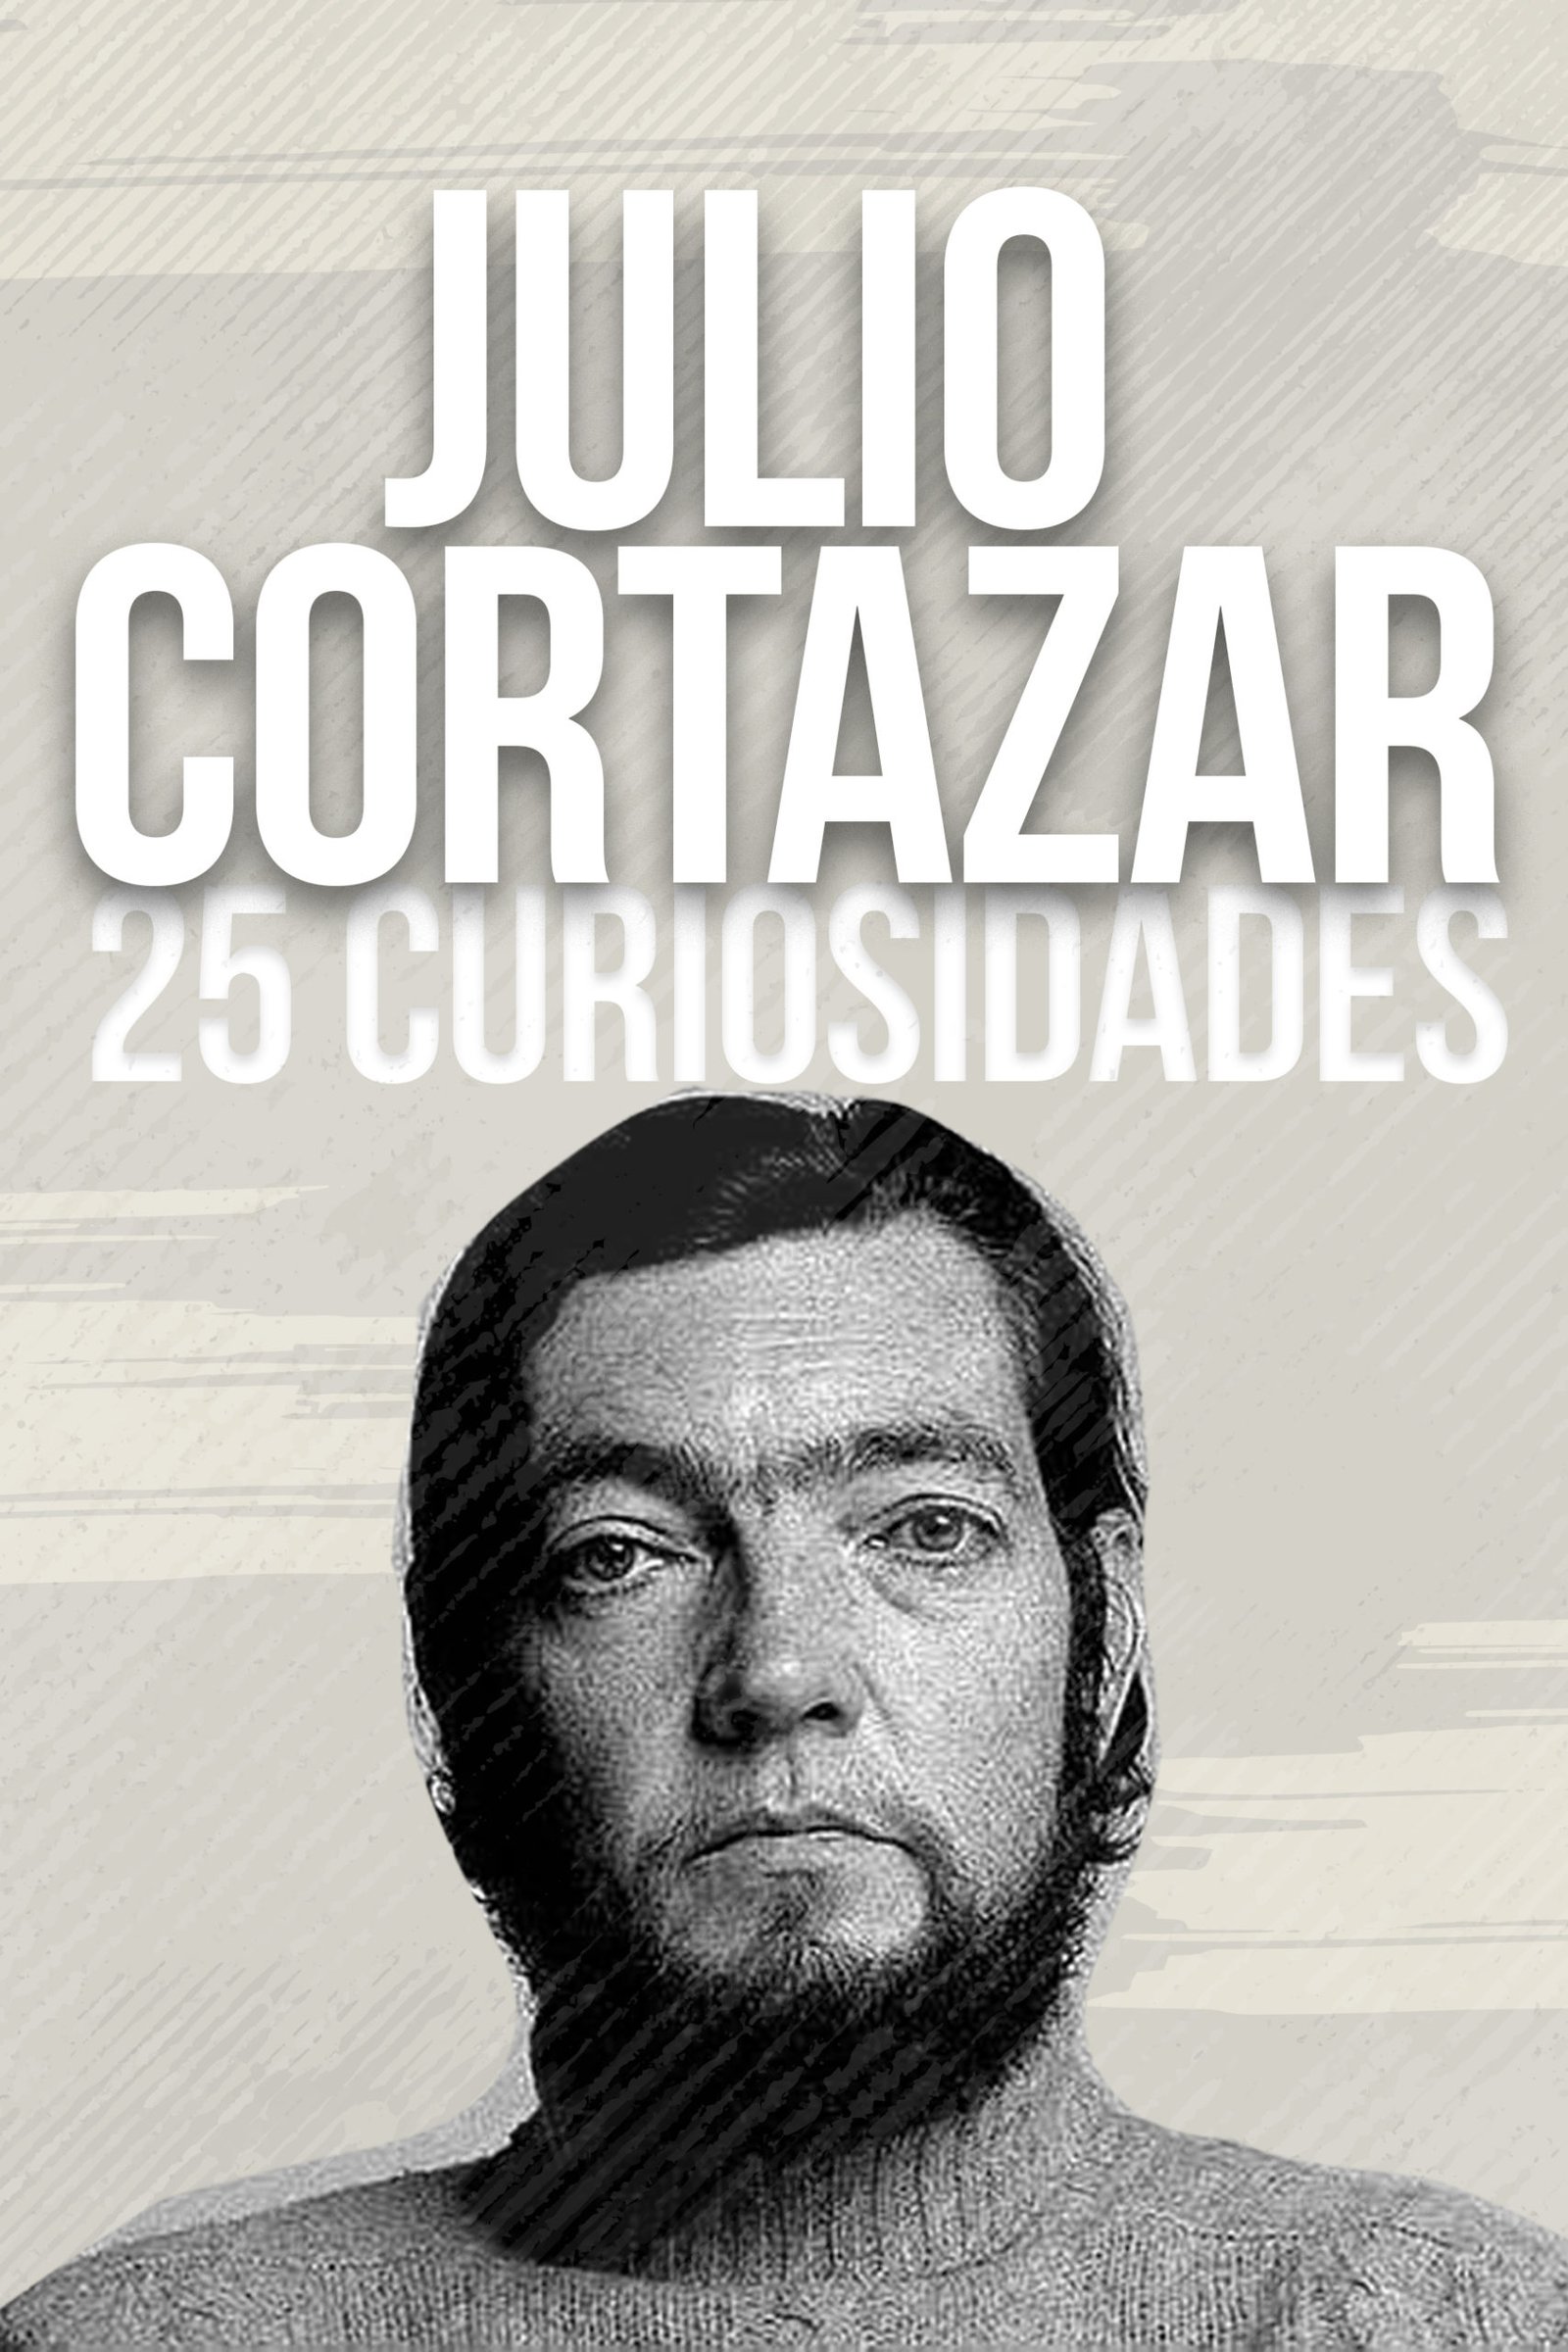 ¿Quién fue Julio Cortázar? – 25 Curiosidades Sobre Su Vida